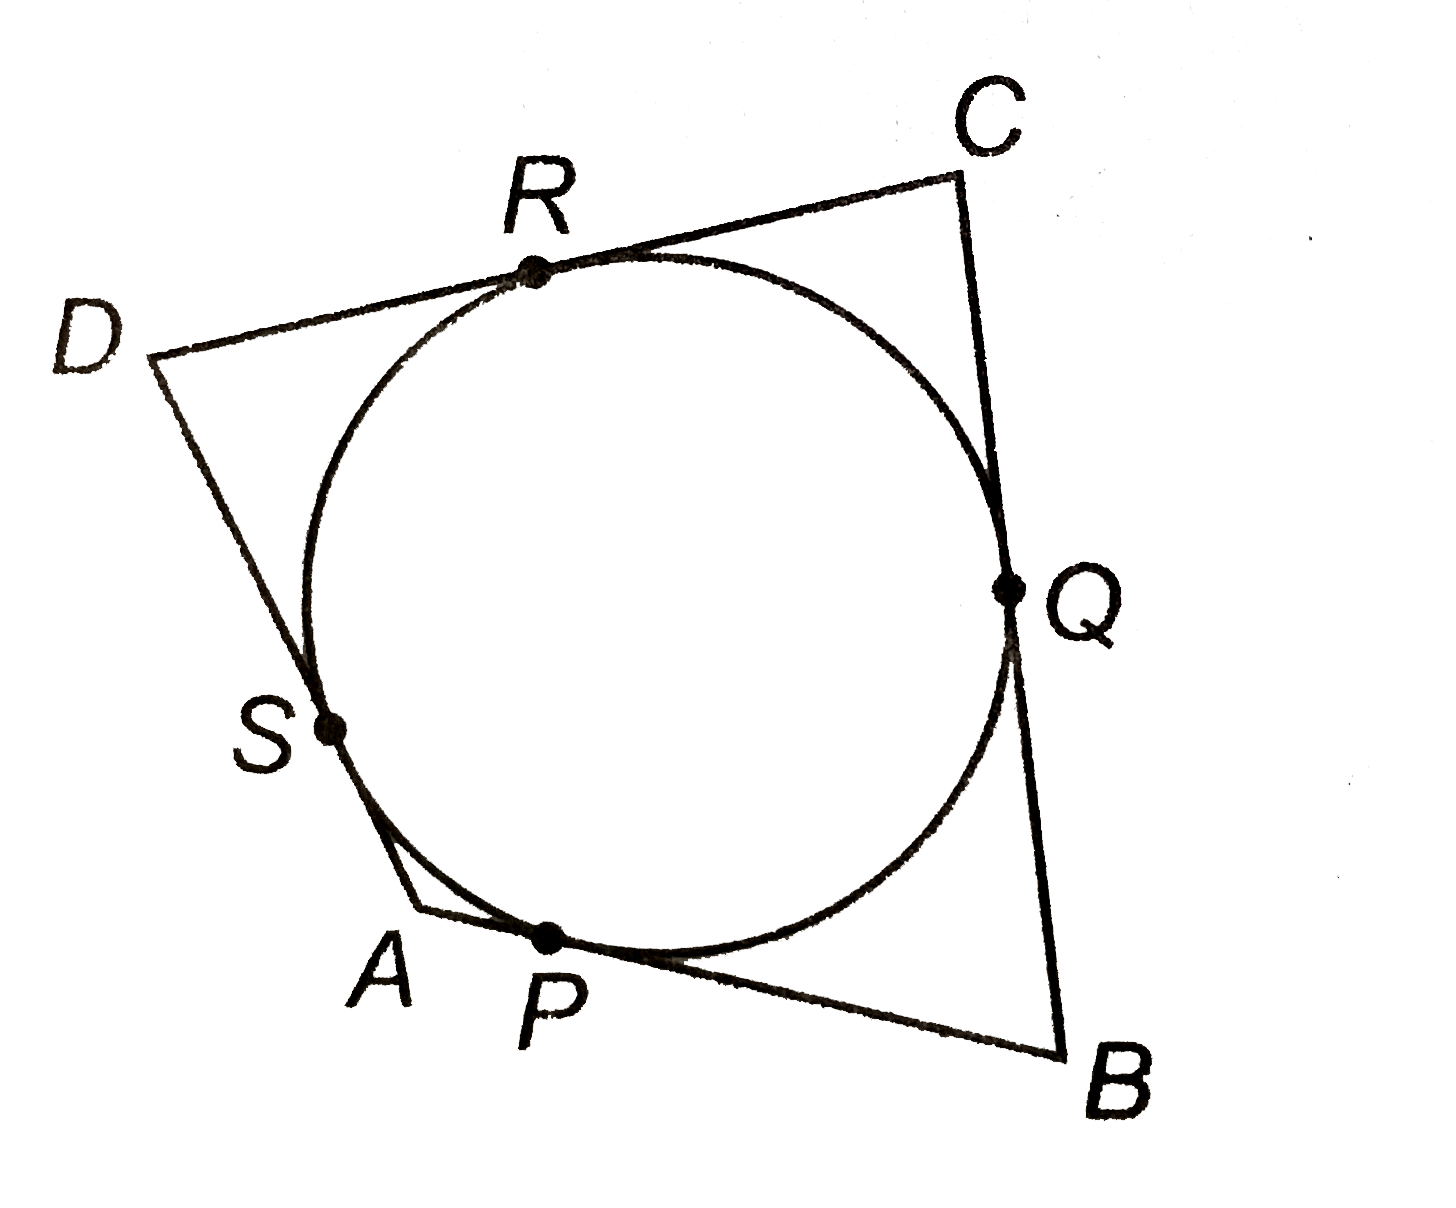 एक वृत्त के परिगत एक चतुर्भुज ABCD खींचा गया है (देखिए आकृति)। सिद्ध कीजिए : AB+CD=AD+BC